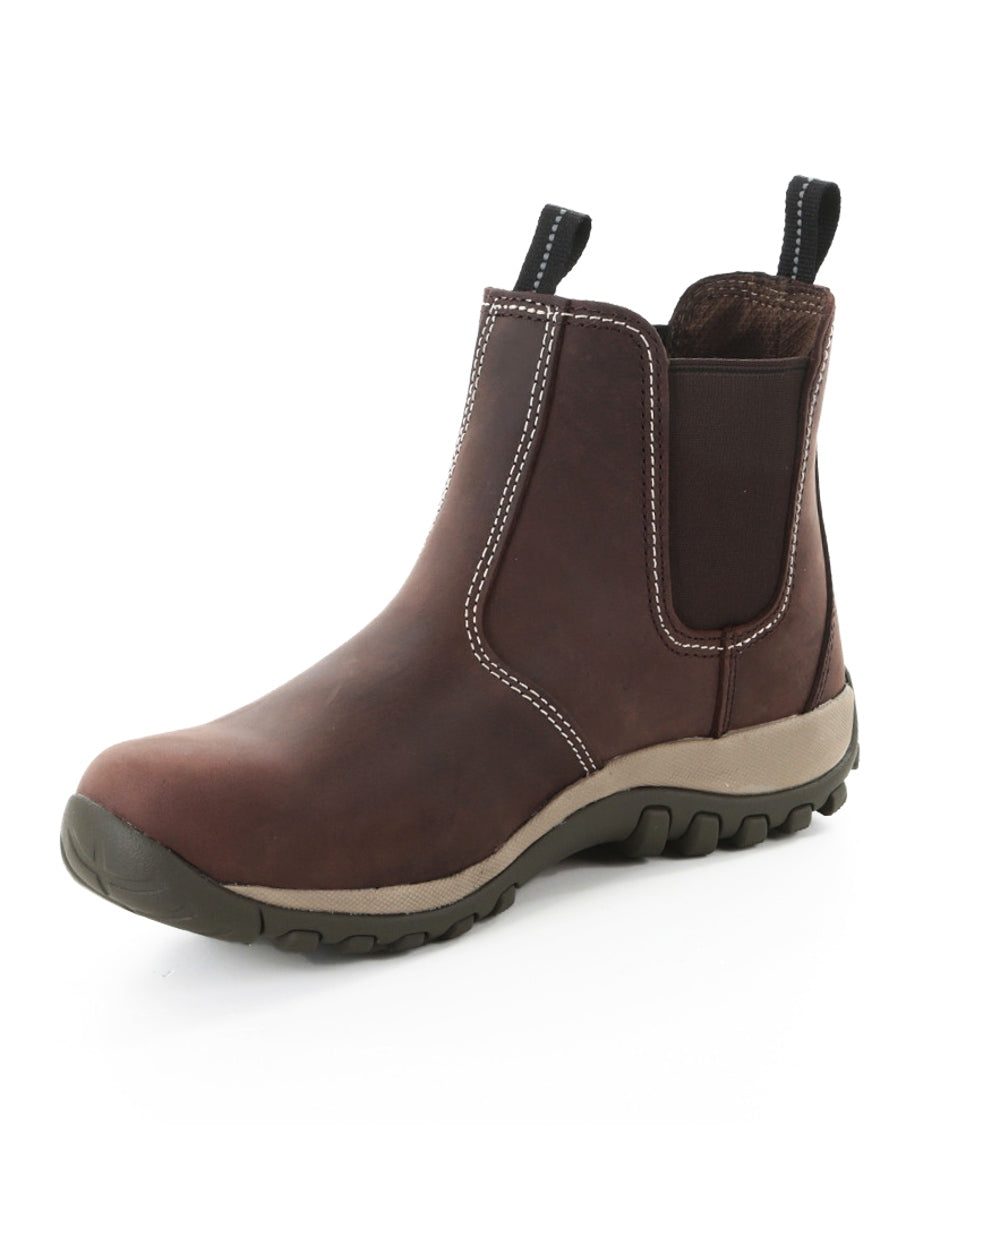 DeWalt Radial Leather Safety Dealer Boots in Brown